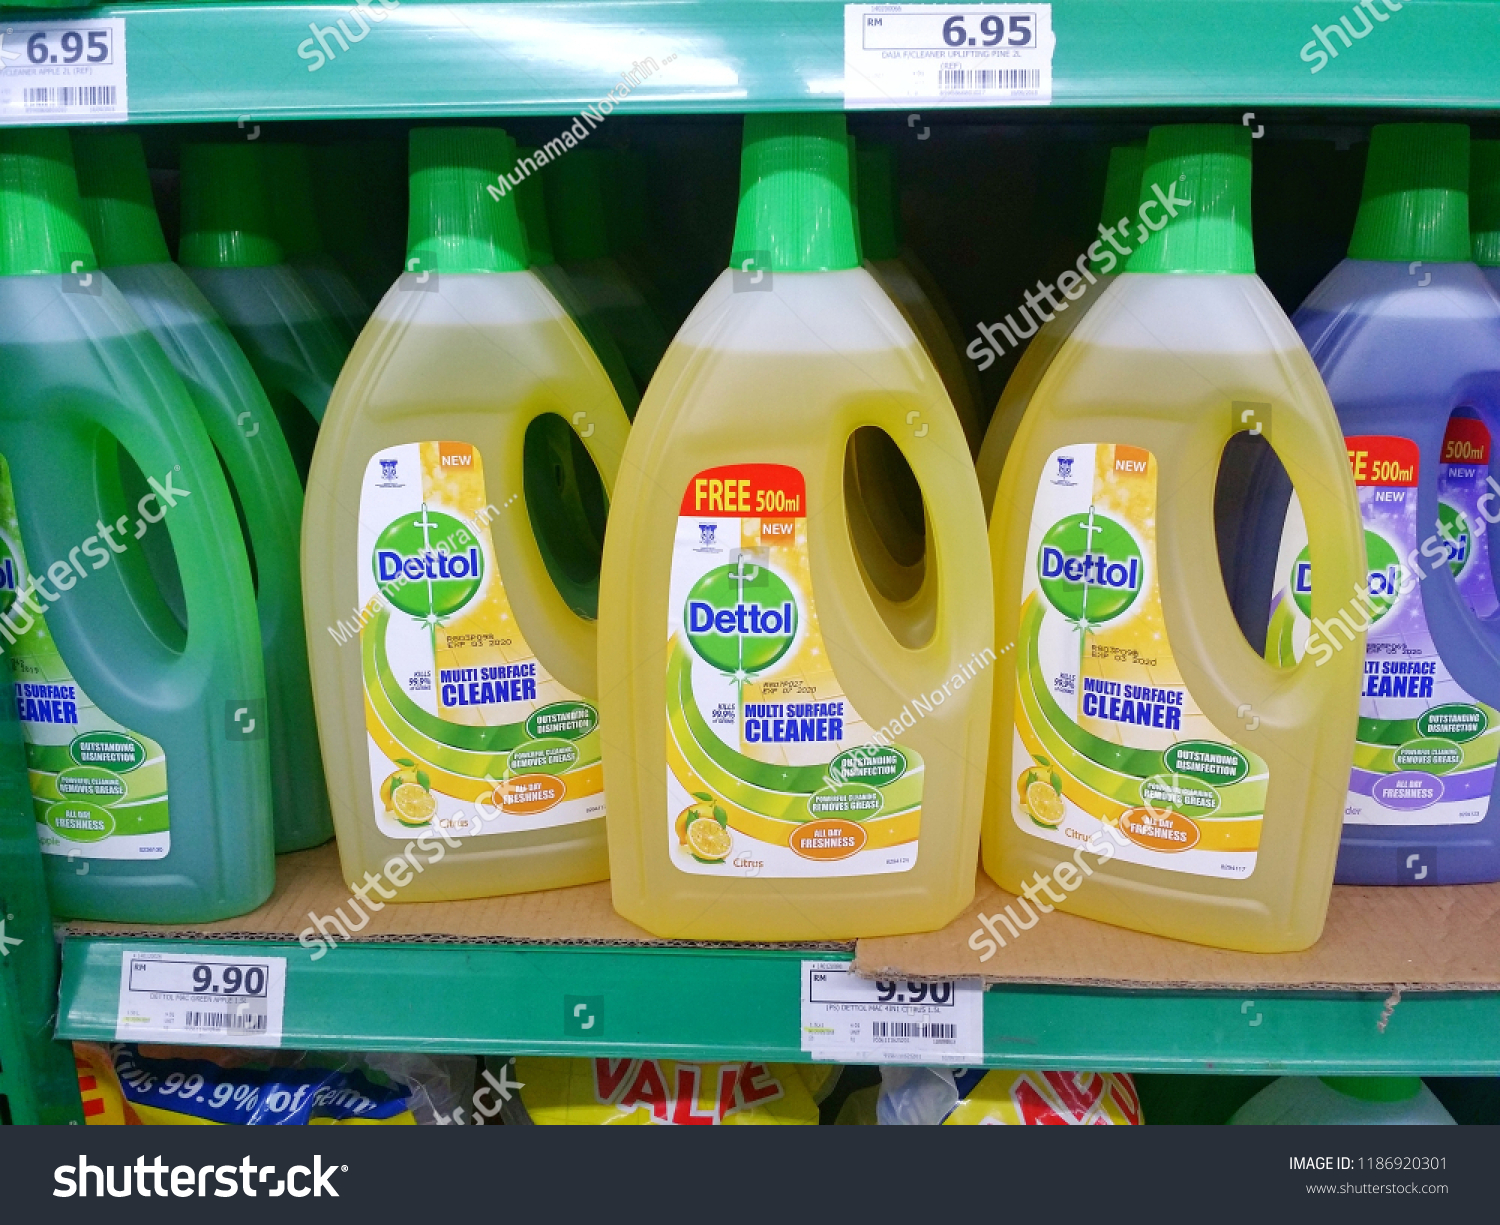 Dettol Hand Wash Aloe Vera 170ml Liquid Soap Refill Online Shop Price In Bangladesh In 2020 Aloe Vera Aloe Vera Liquid Aloe